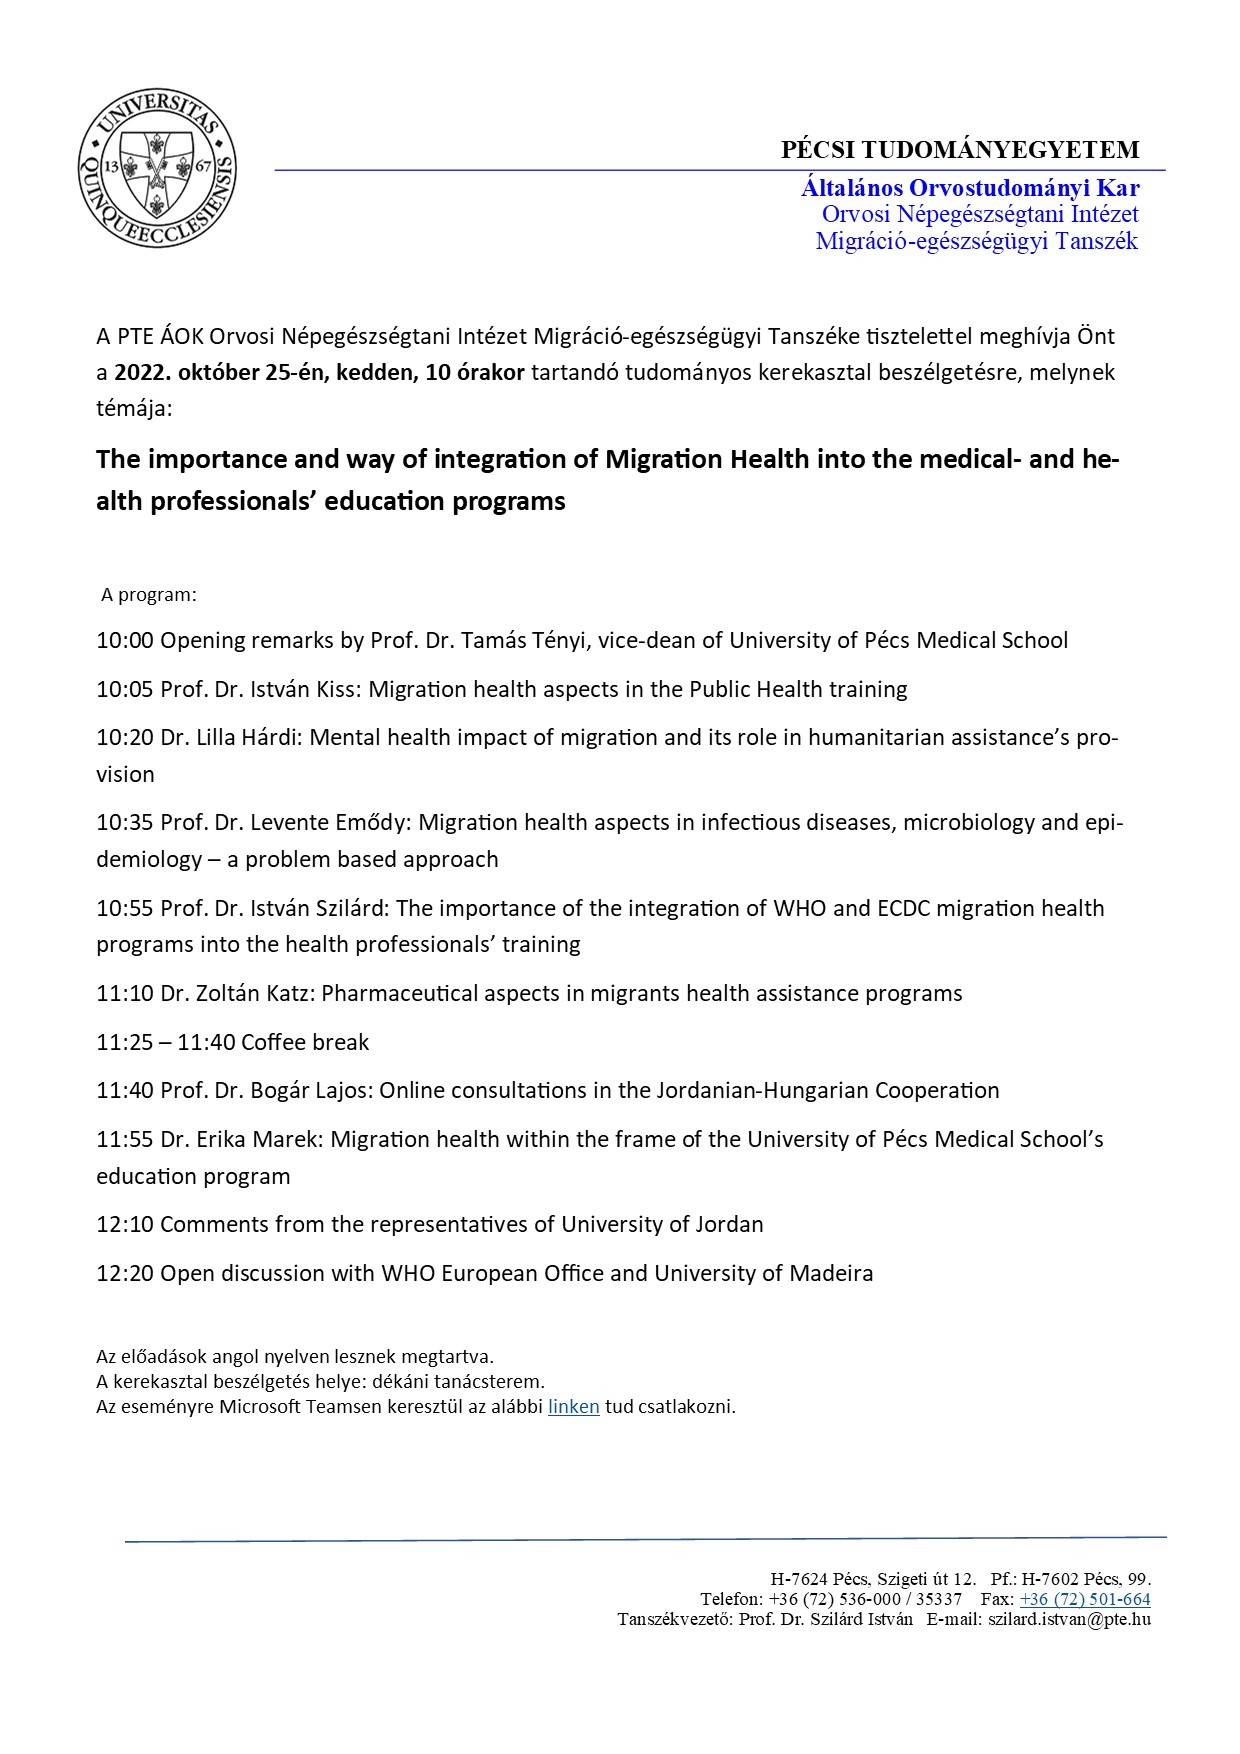 A migrációs egészségügy integrálásának fontossága az egészségügyben